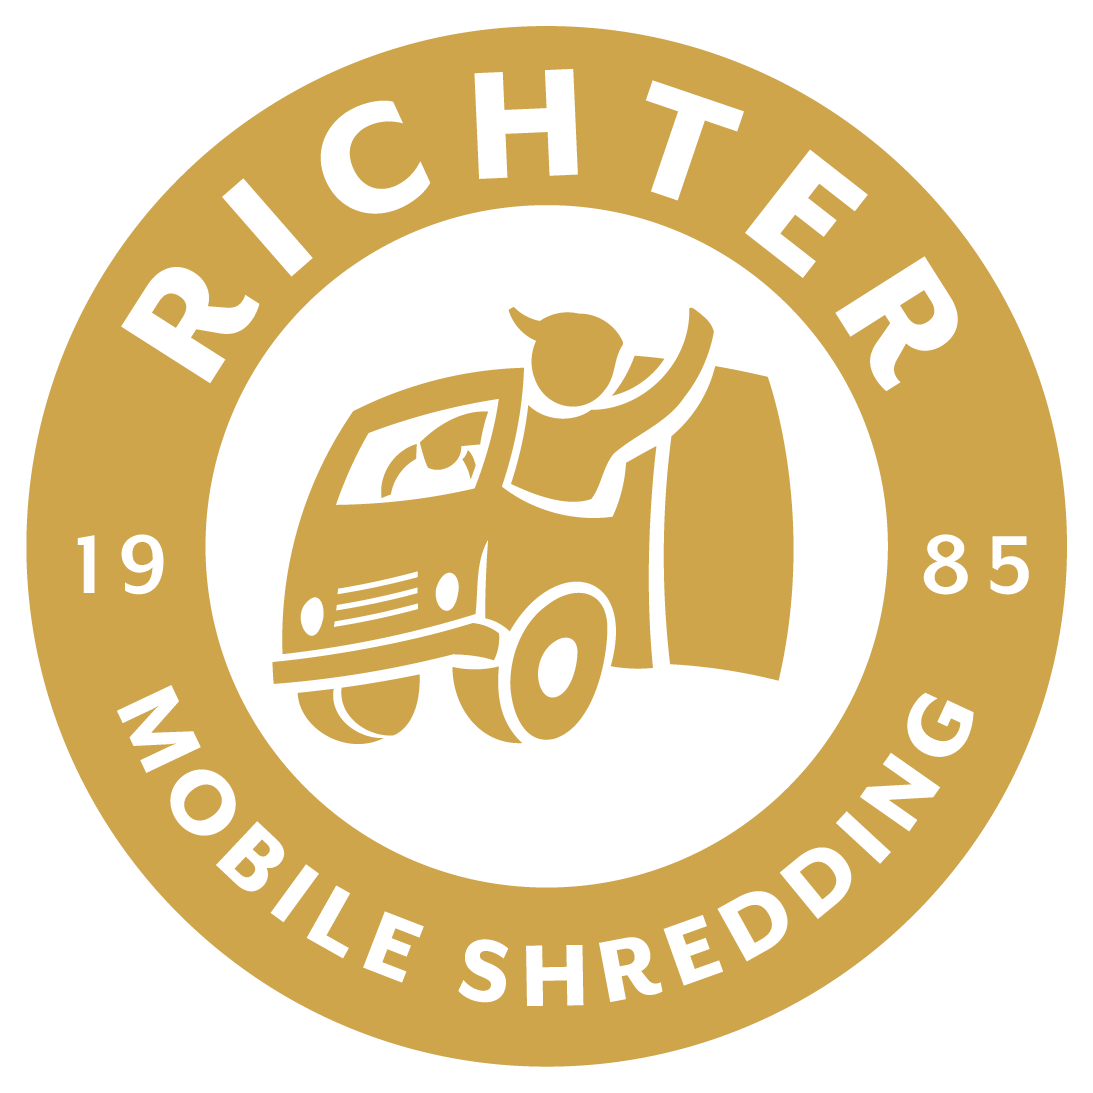 Richter Mobile Shredding